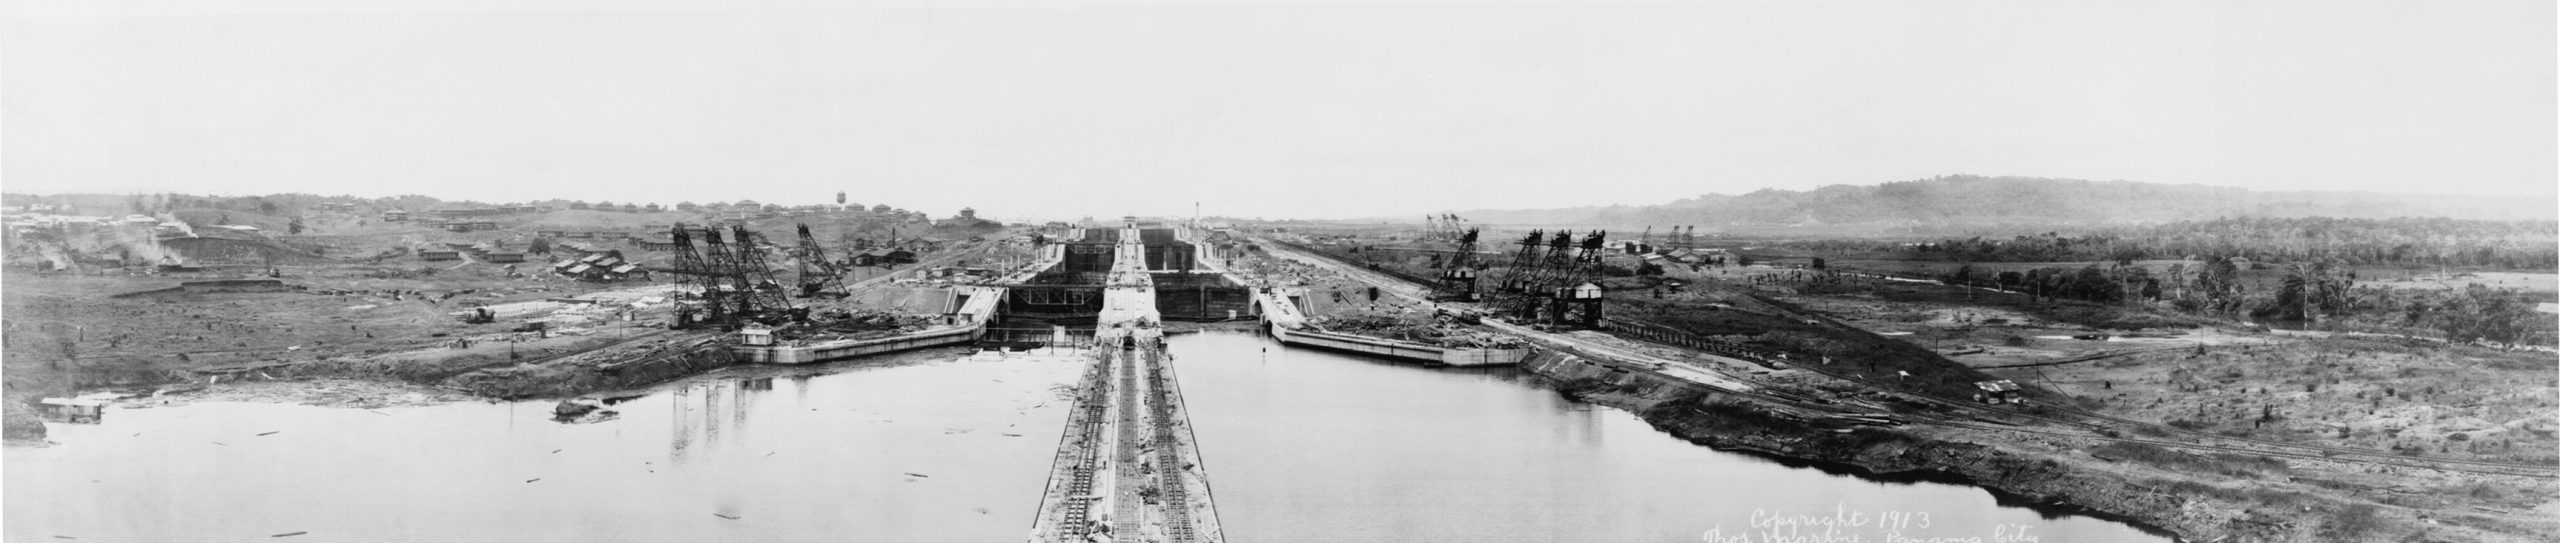 1 de octubre de 1979 Estados Unidos devuelve la soberanía del Canal de Panamá a Panamá